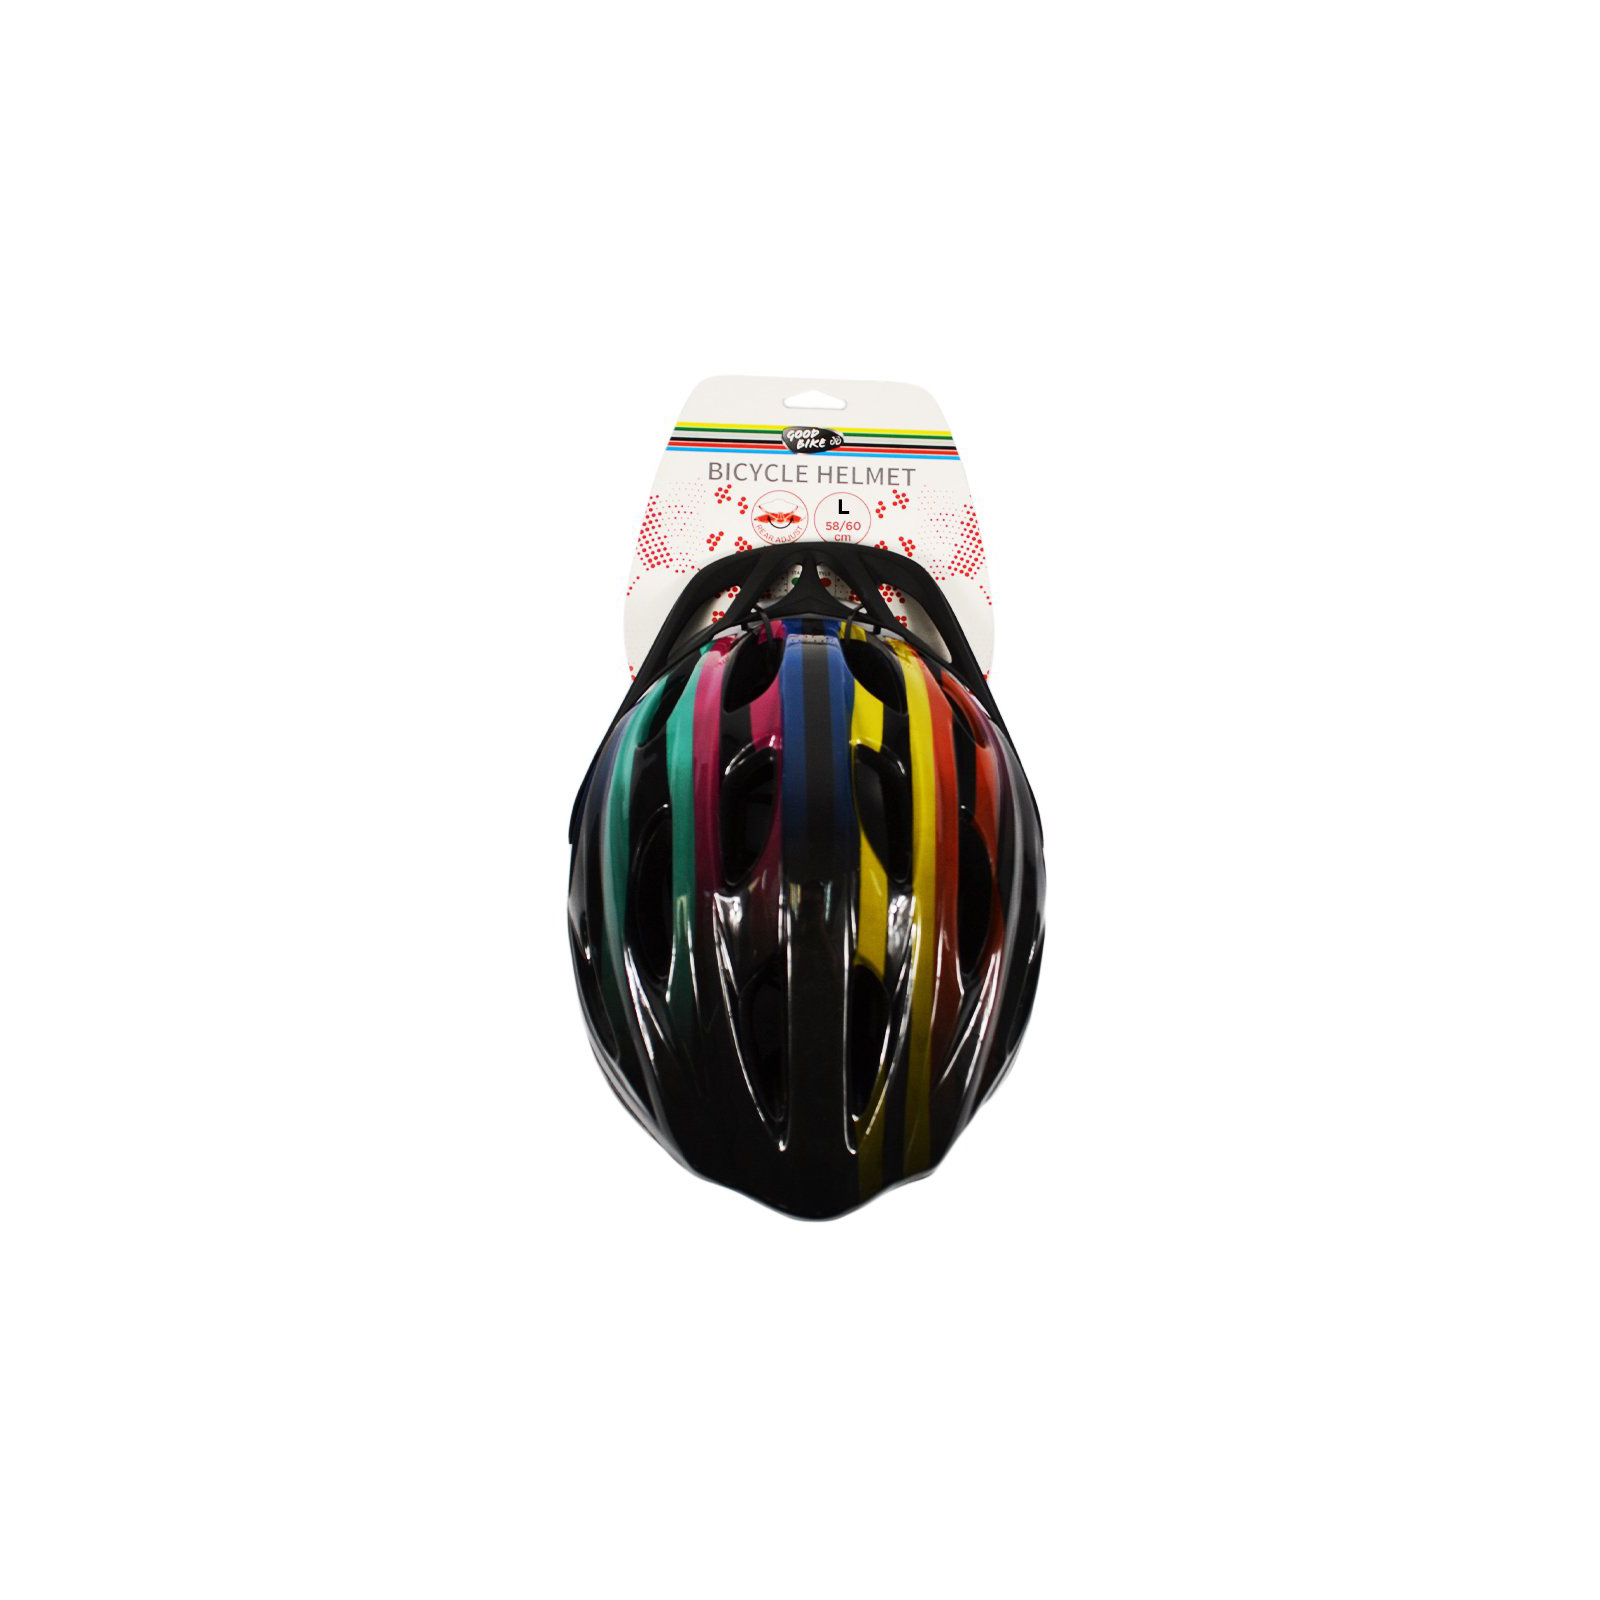 Шлем Good Bike L 58-60 см Black/White (88855/4-IS) изображение 6